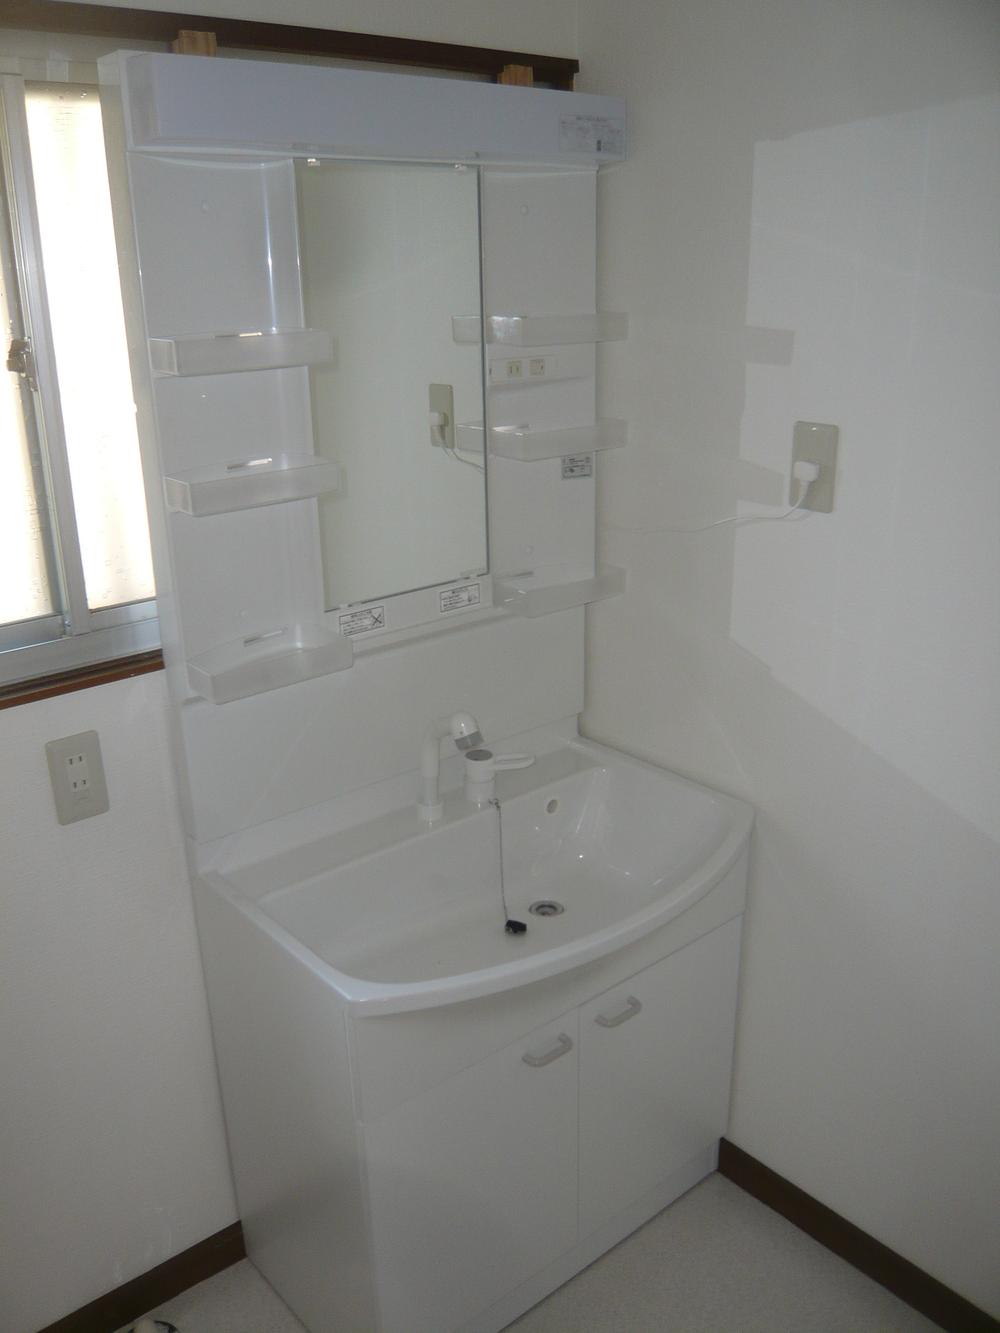 Wash basin, toilet. Indoor (10 May 2012) shooting